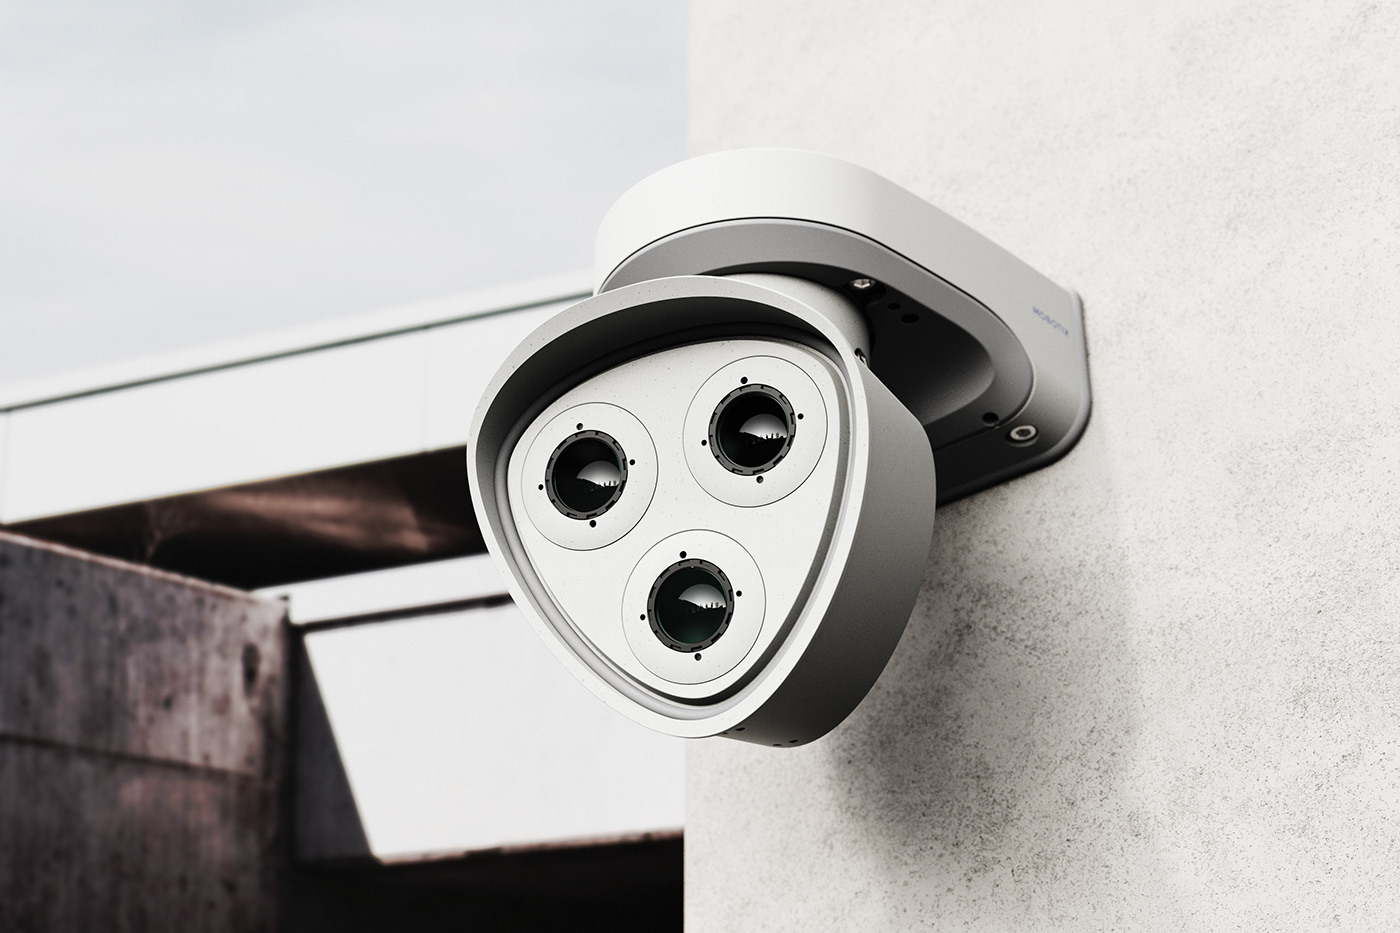 eskild hansen design industrial design  security camera product design  mobotix